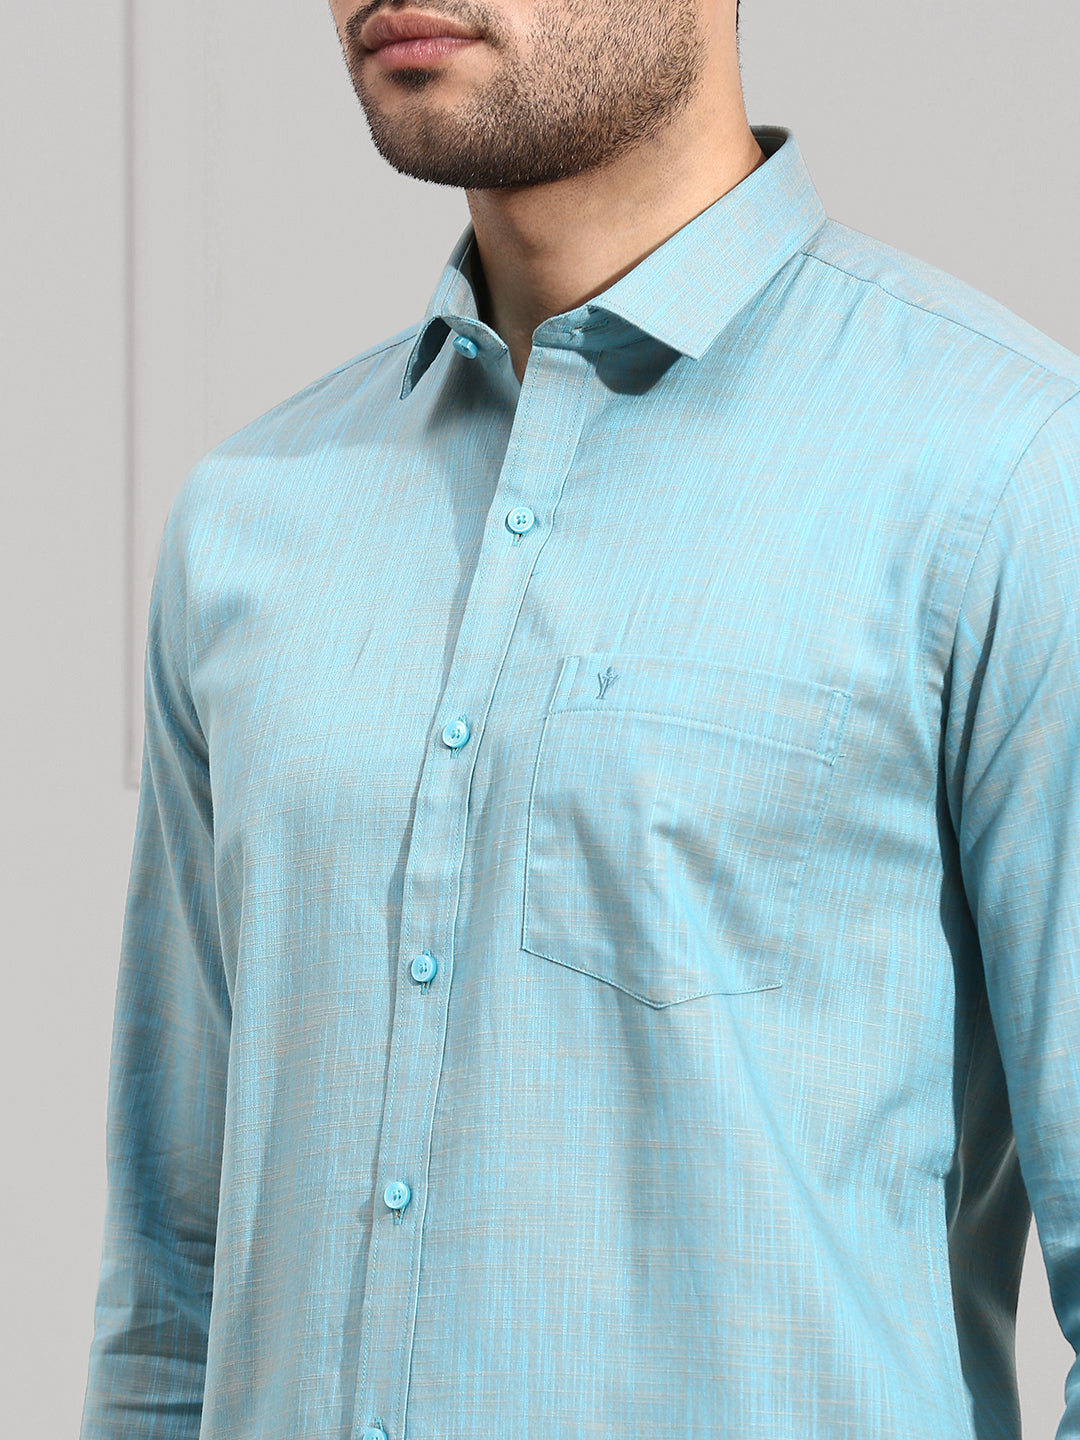 Men 100% Cotton Formal Shirt Light Blue